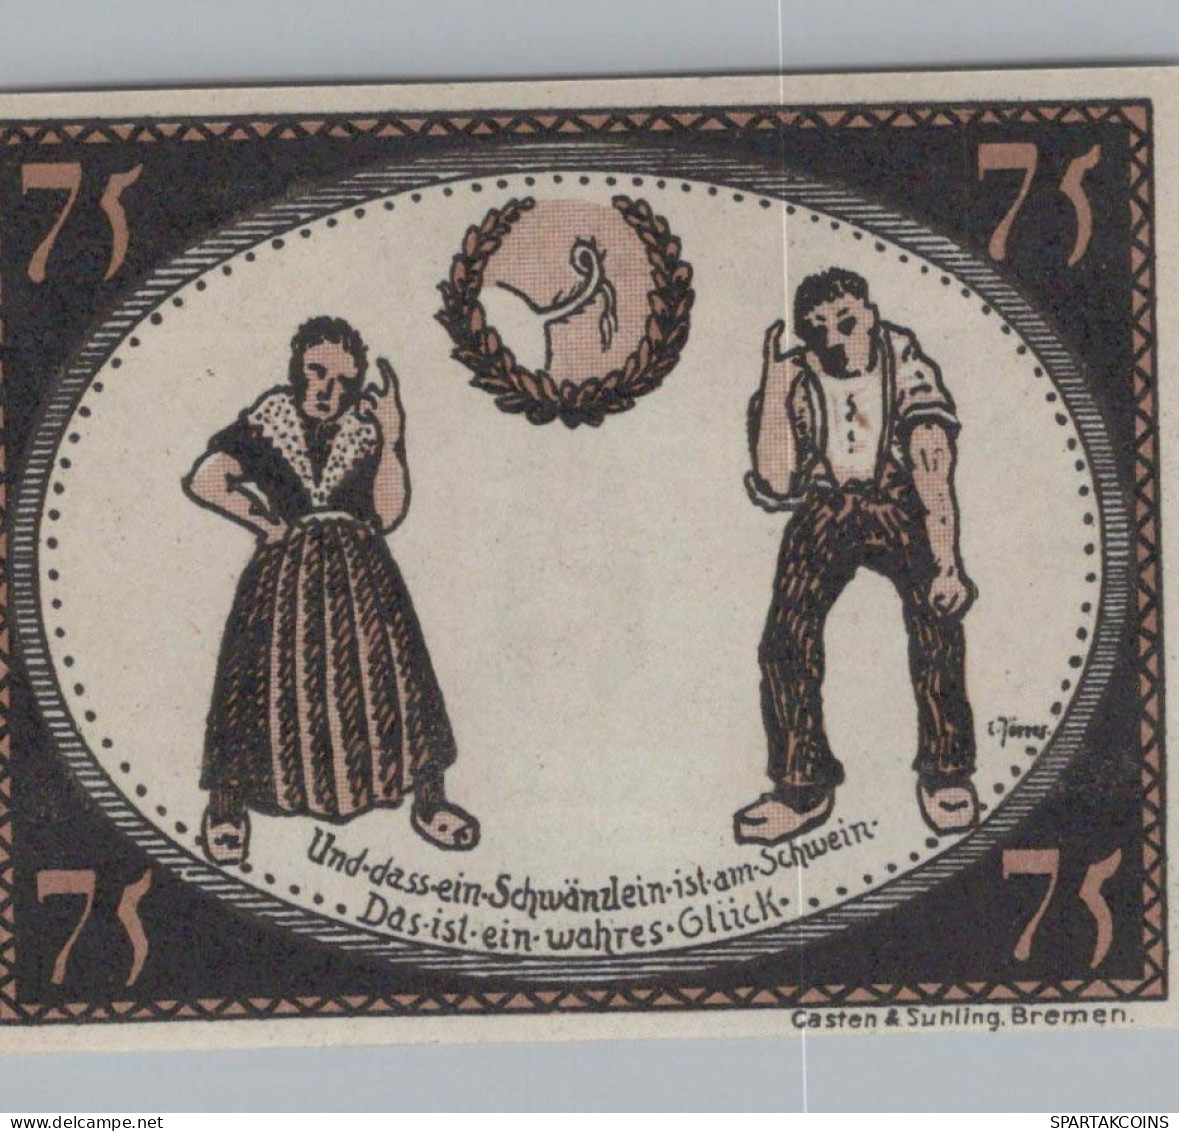 75 PFENNIG 1921 Stadt DIEPHOLZ Hanover UNC DEUTSCHLAND Notgeld Banknote #PA460 - [11] Emissions Locales